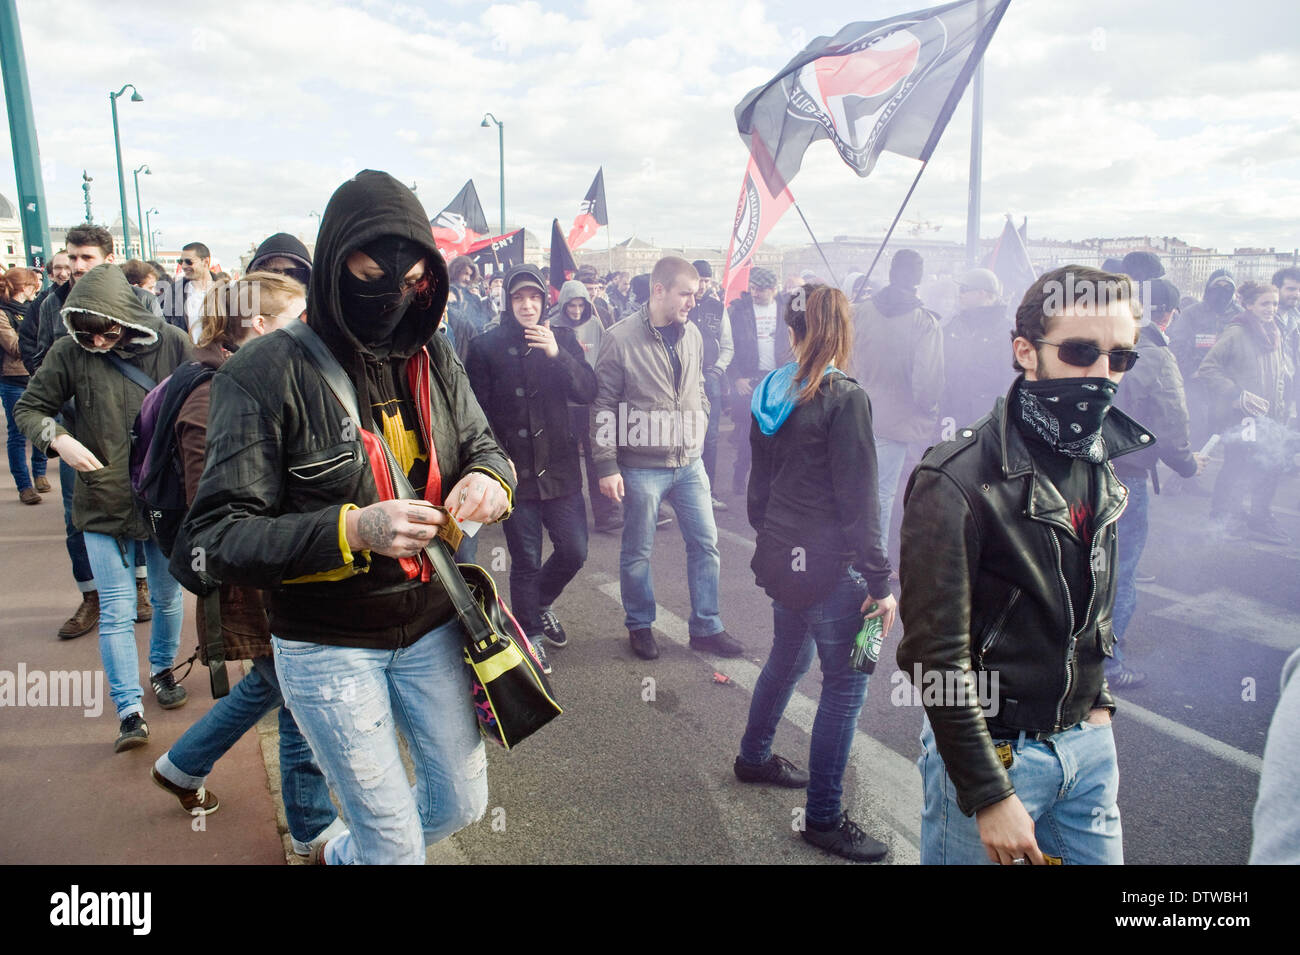 Lyon, Francia. 22 Feb, 2014. antifascista y militantes anarquistas que protestaban contra las agresiones de extrema derecha en Lyon © Benjamin Lardet/NurPhoto/ZUMAPRESS.com/Alamy Live News Foto de stock